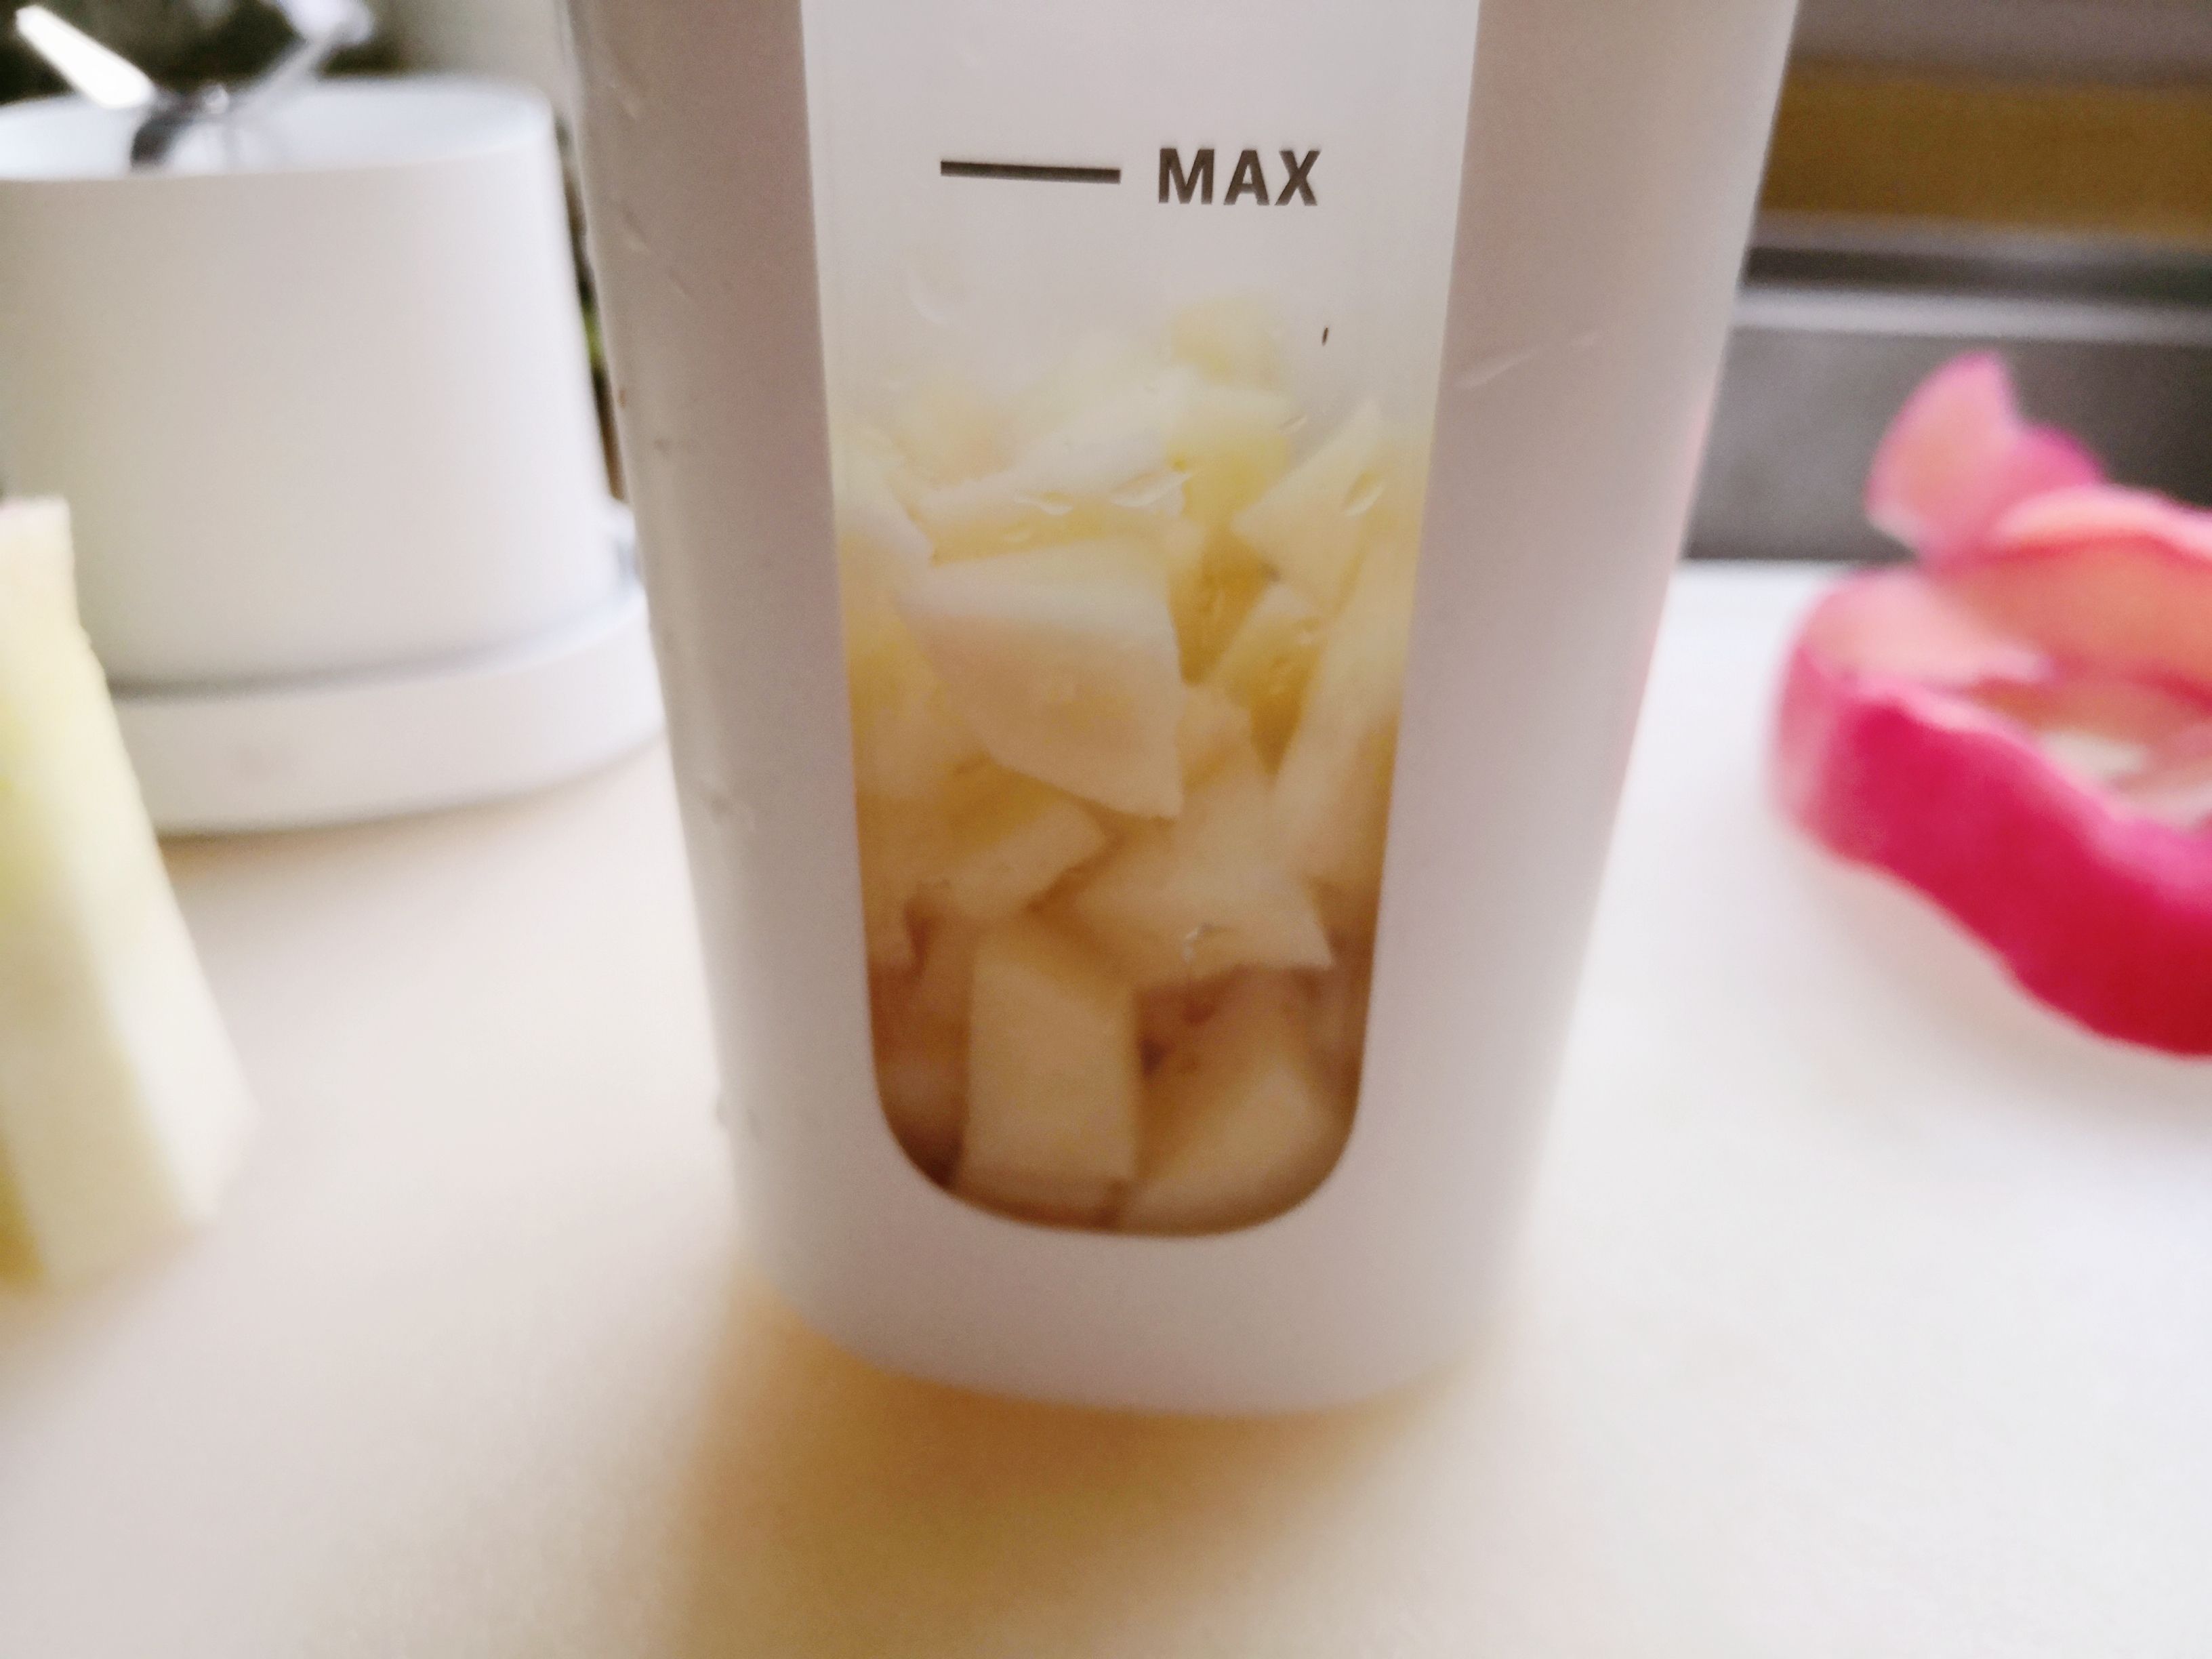 Apple Hawthorn Juice recipe